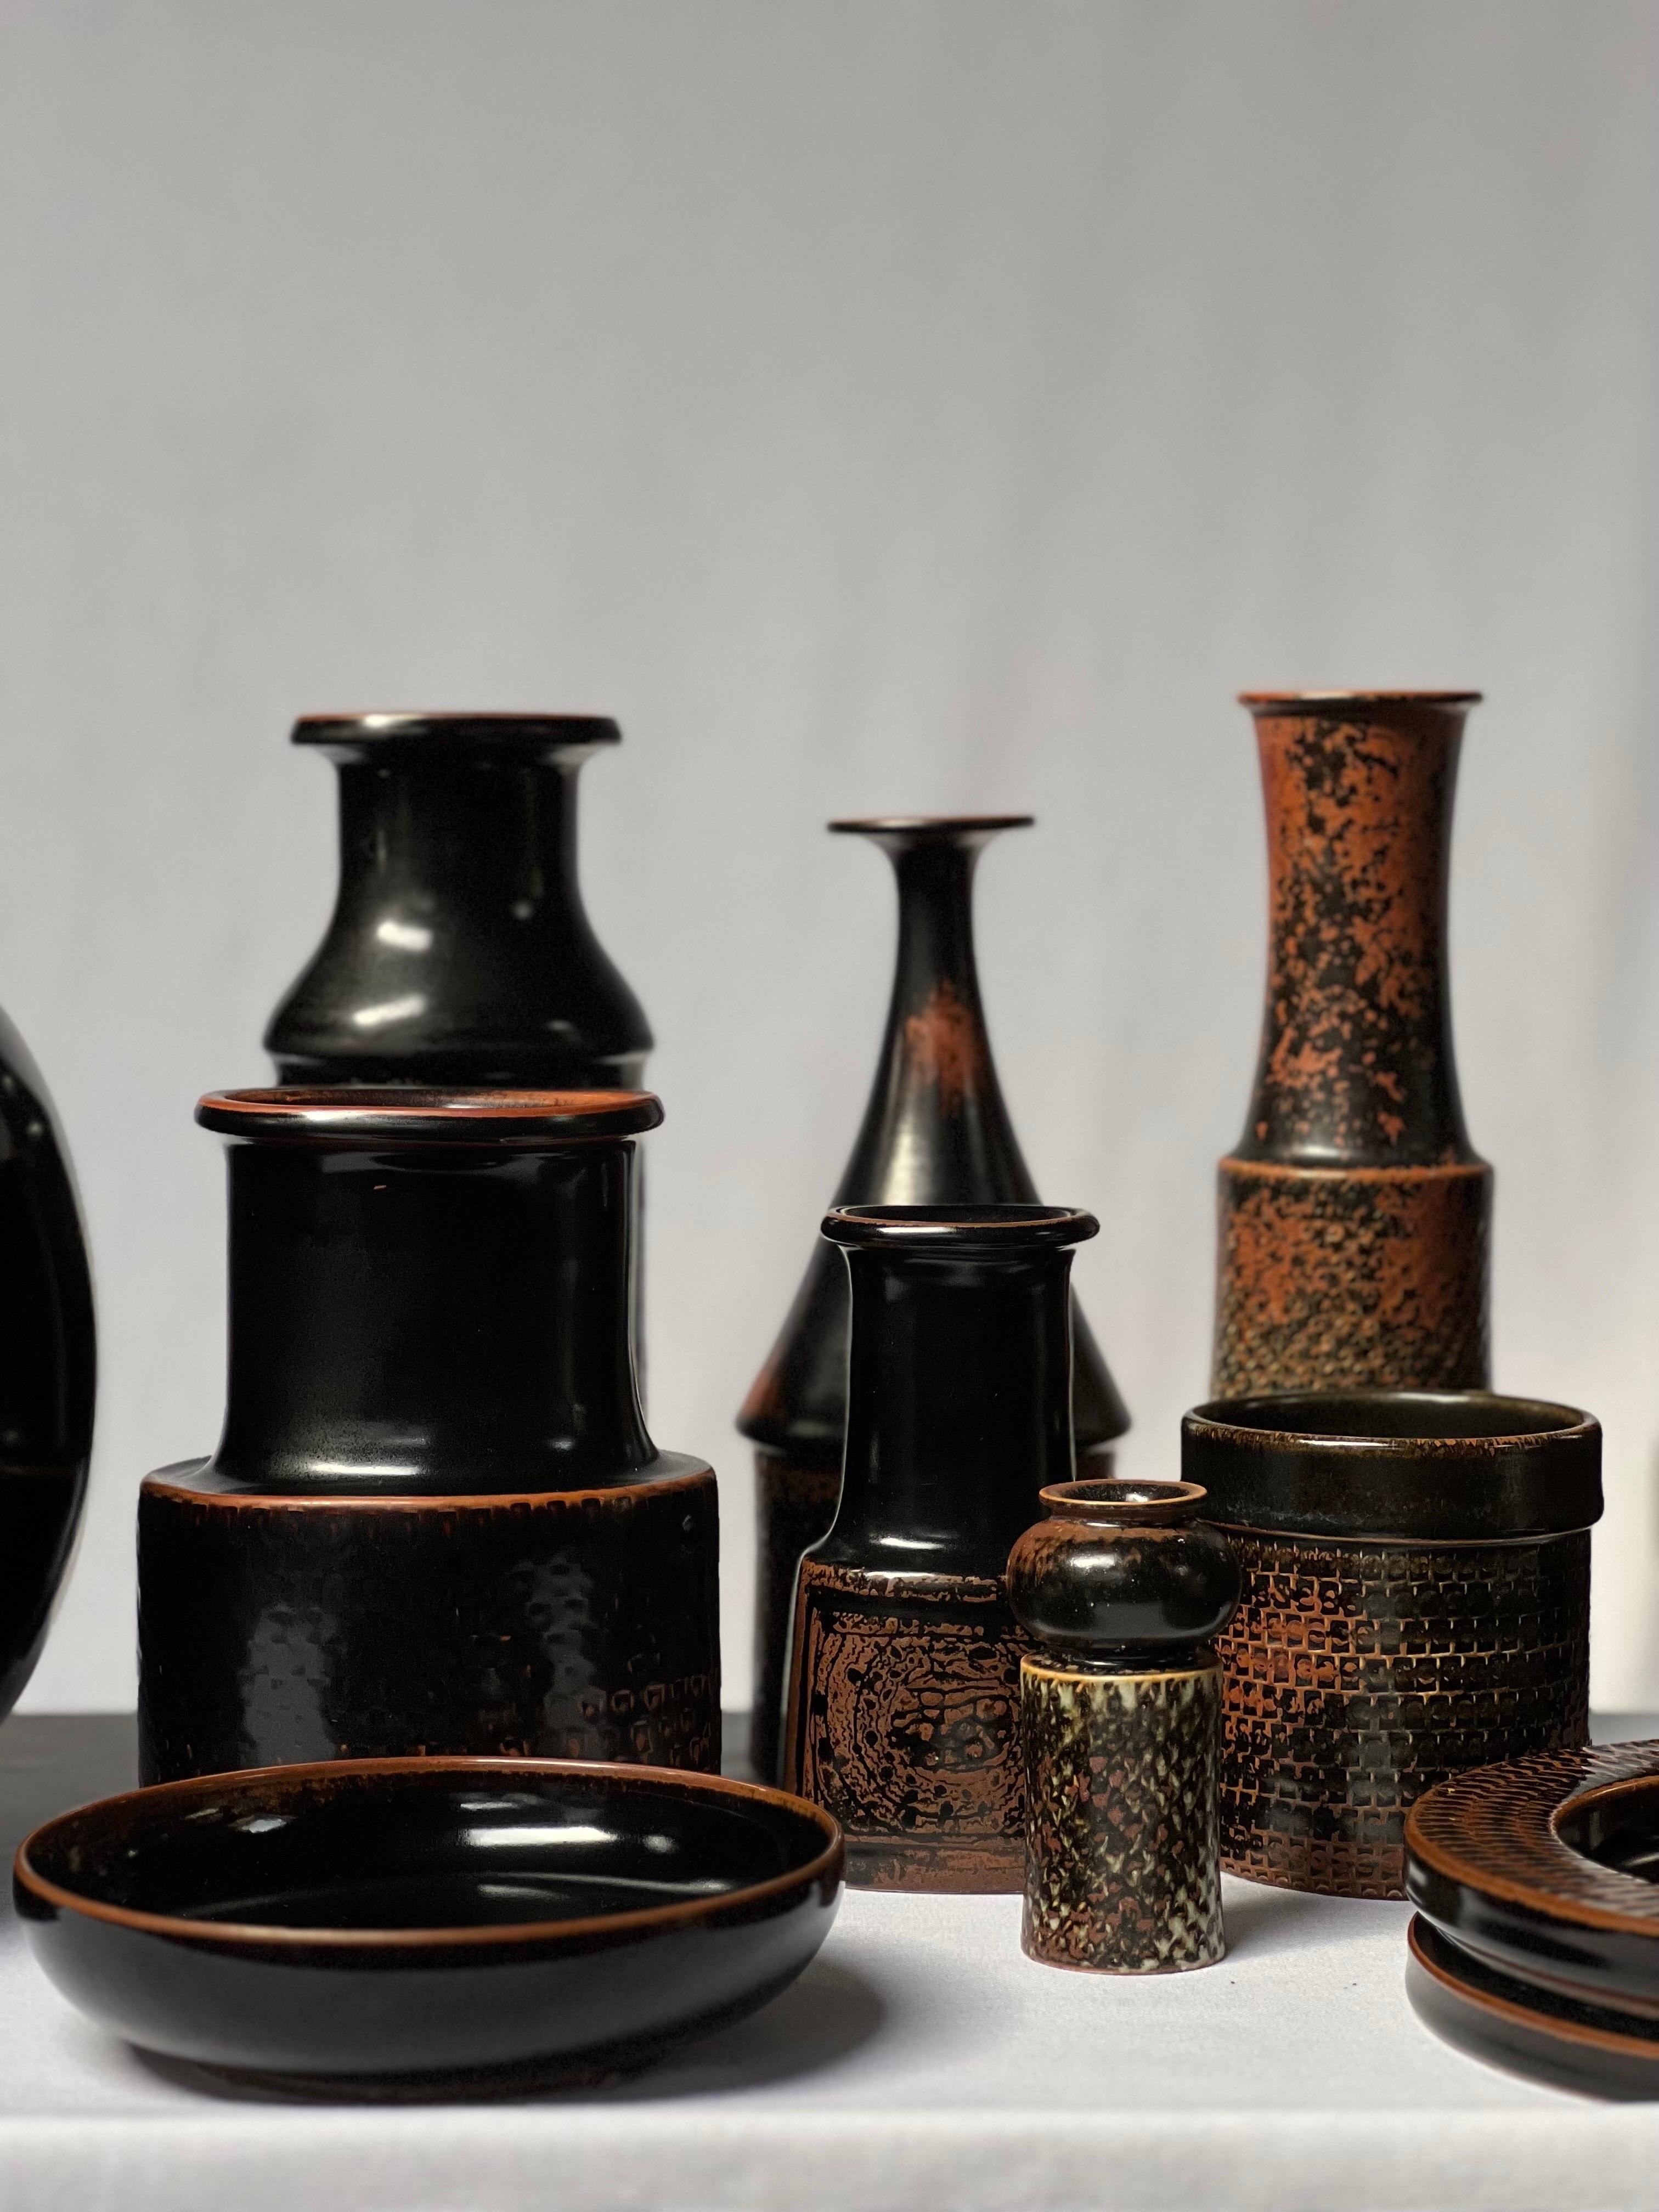 Stig Lindberg Unique Vase in black Glaze Tenmoku Made by Hand Sweden 1969 For Sale 3